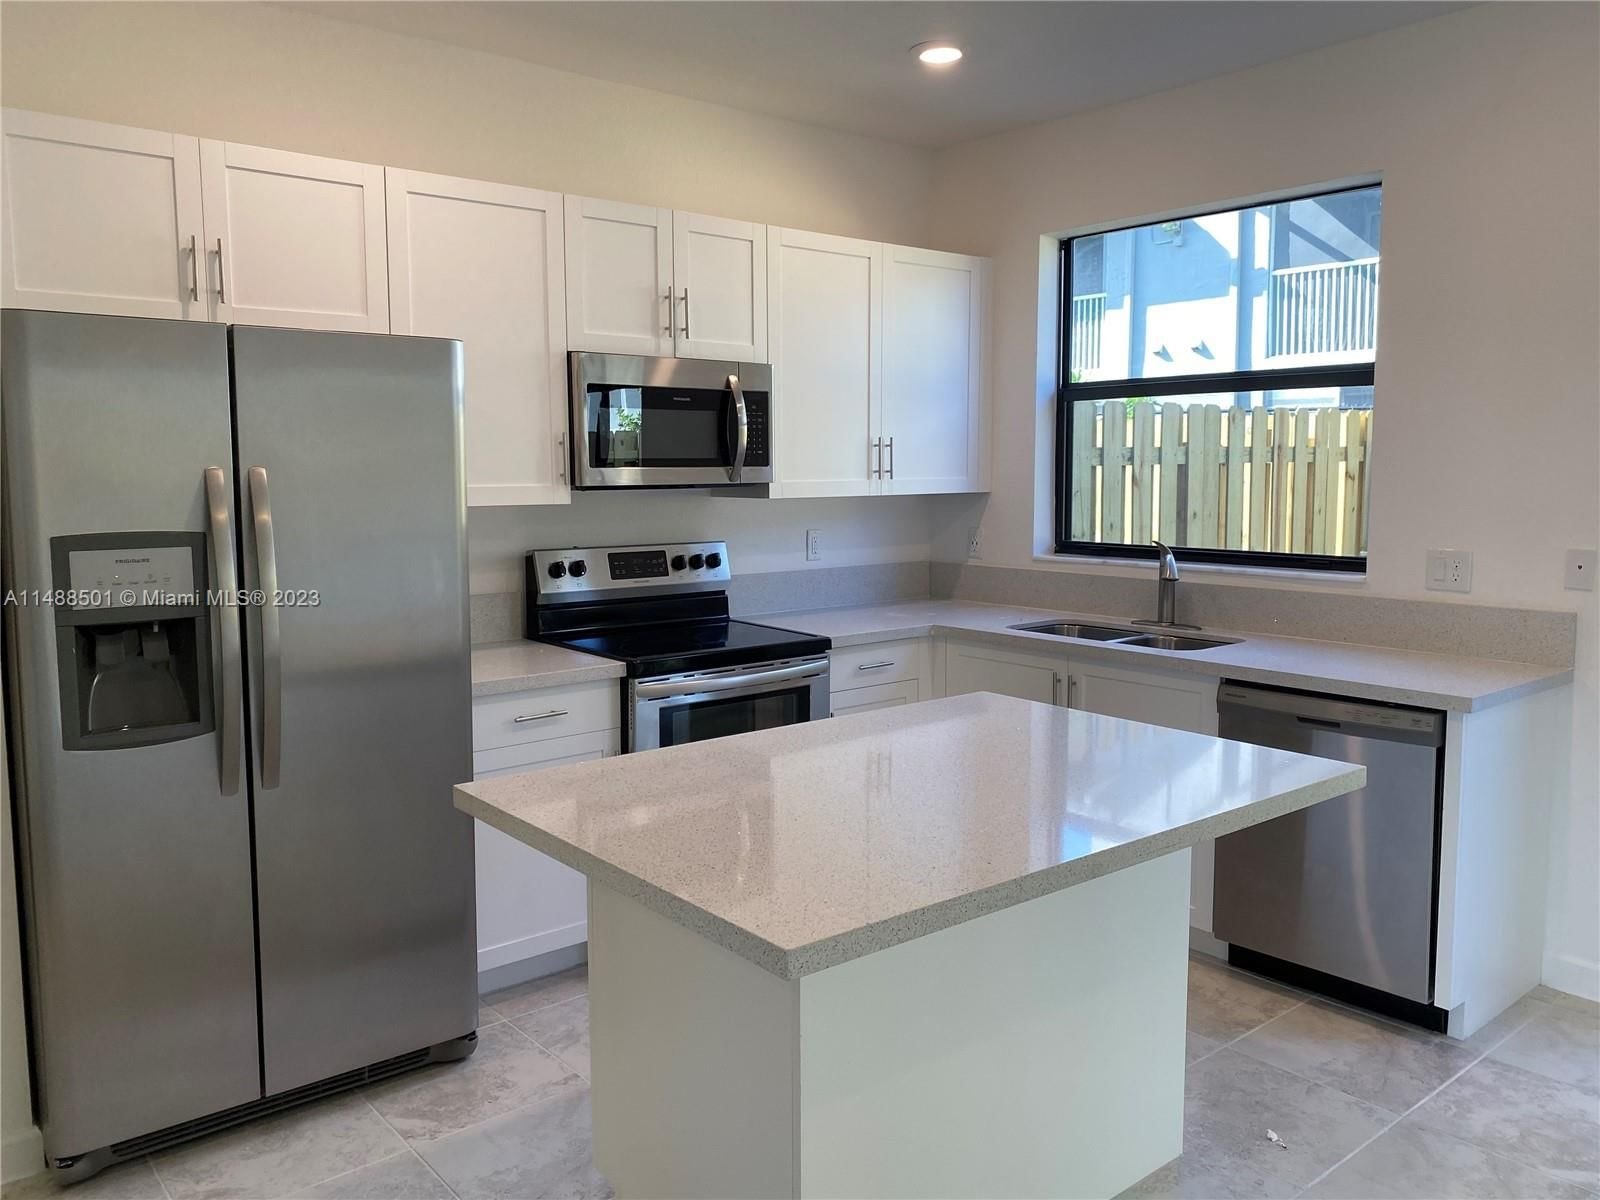 Real estate property located at 383 208 Terrace, Miami-Dade County, RAMBLAS AT Via Ventura, North Miami Beach, FL